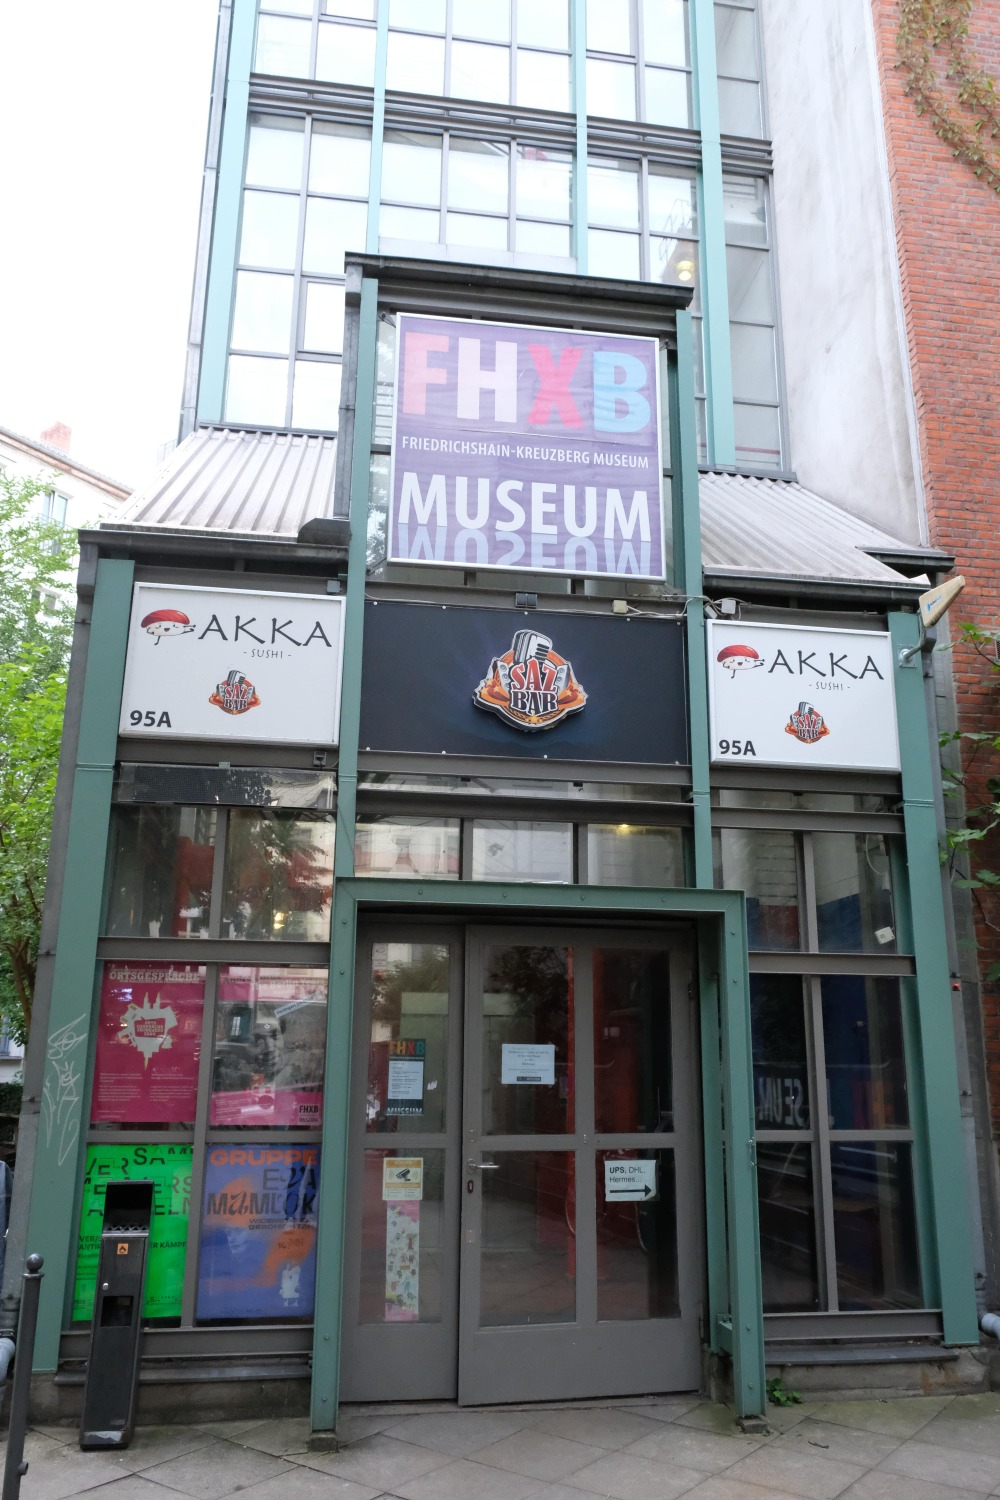 Eingang zum FHXB Friedrichshain-Kreuzberg Museum